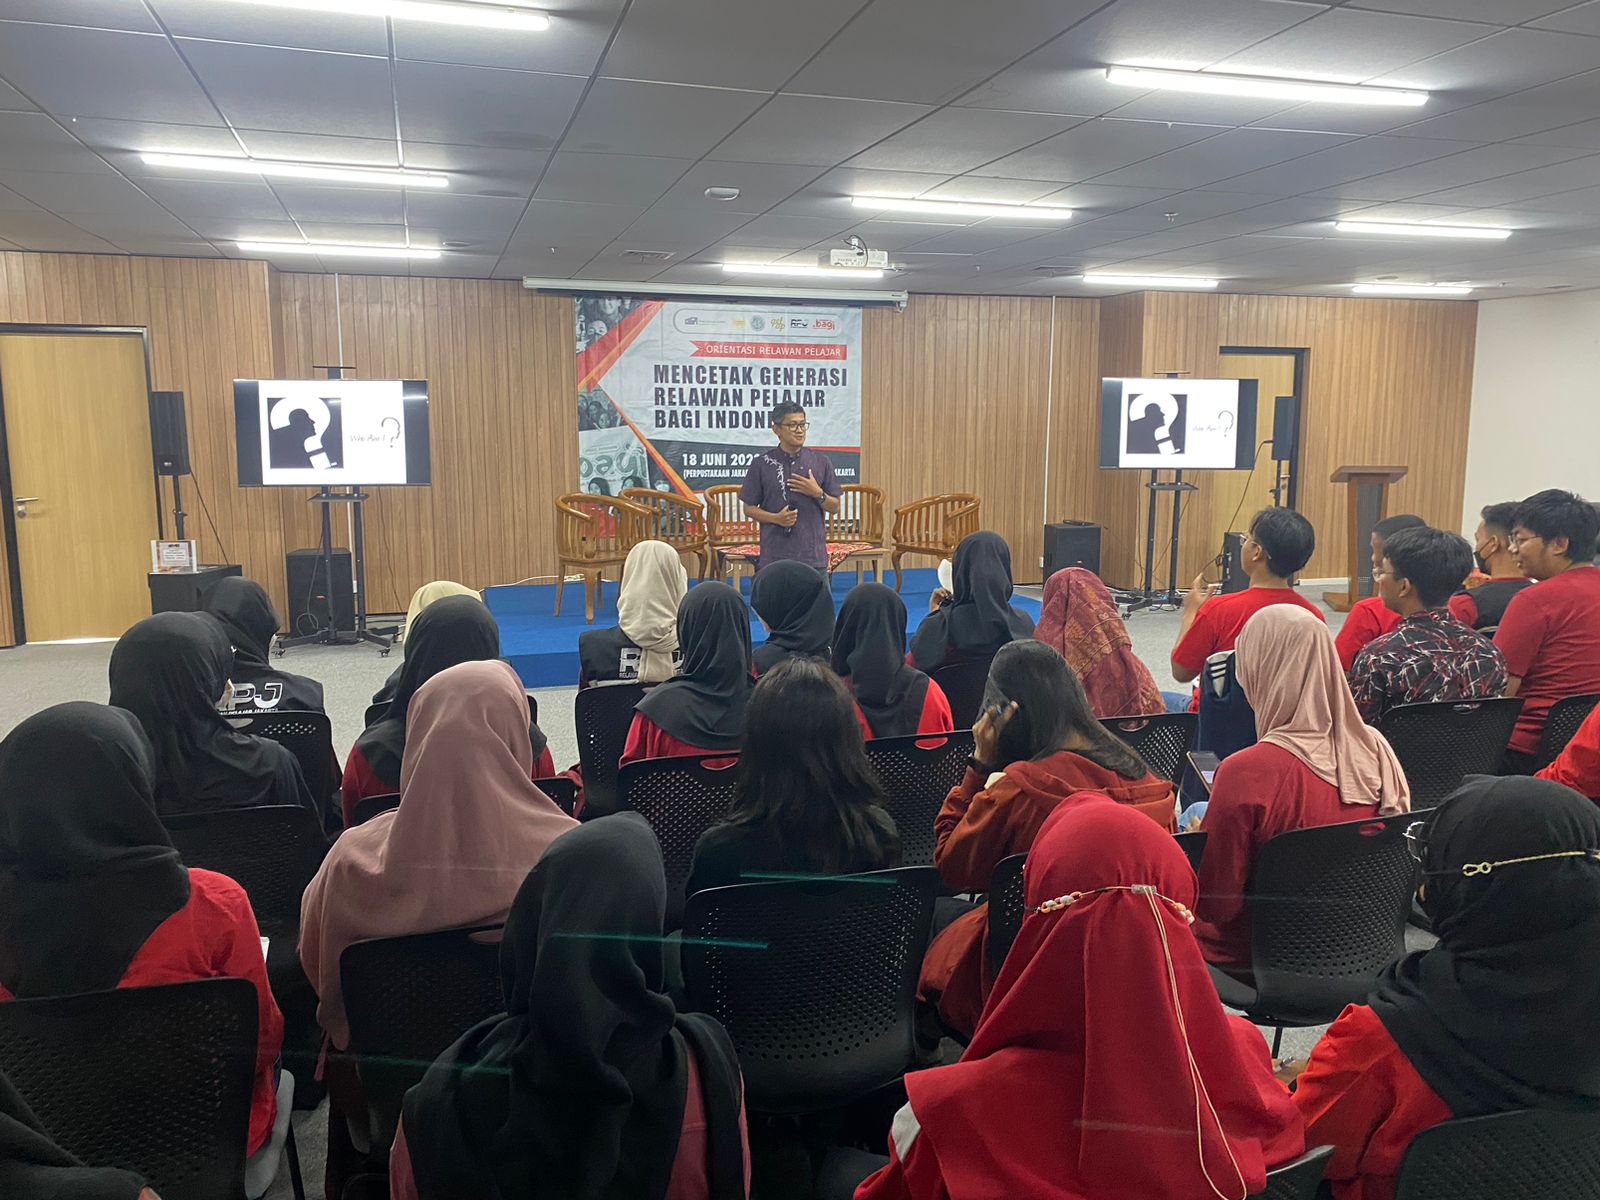 Mencetak Generasi Relawan Pelajar Bagi Indonesia